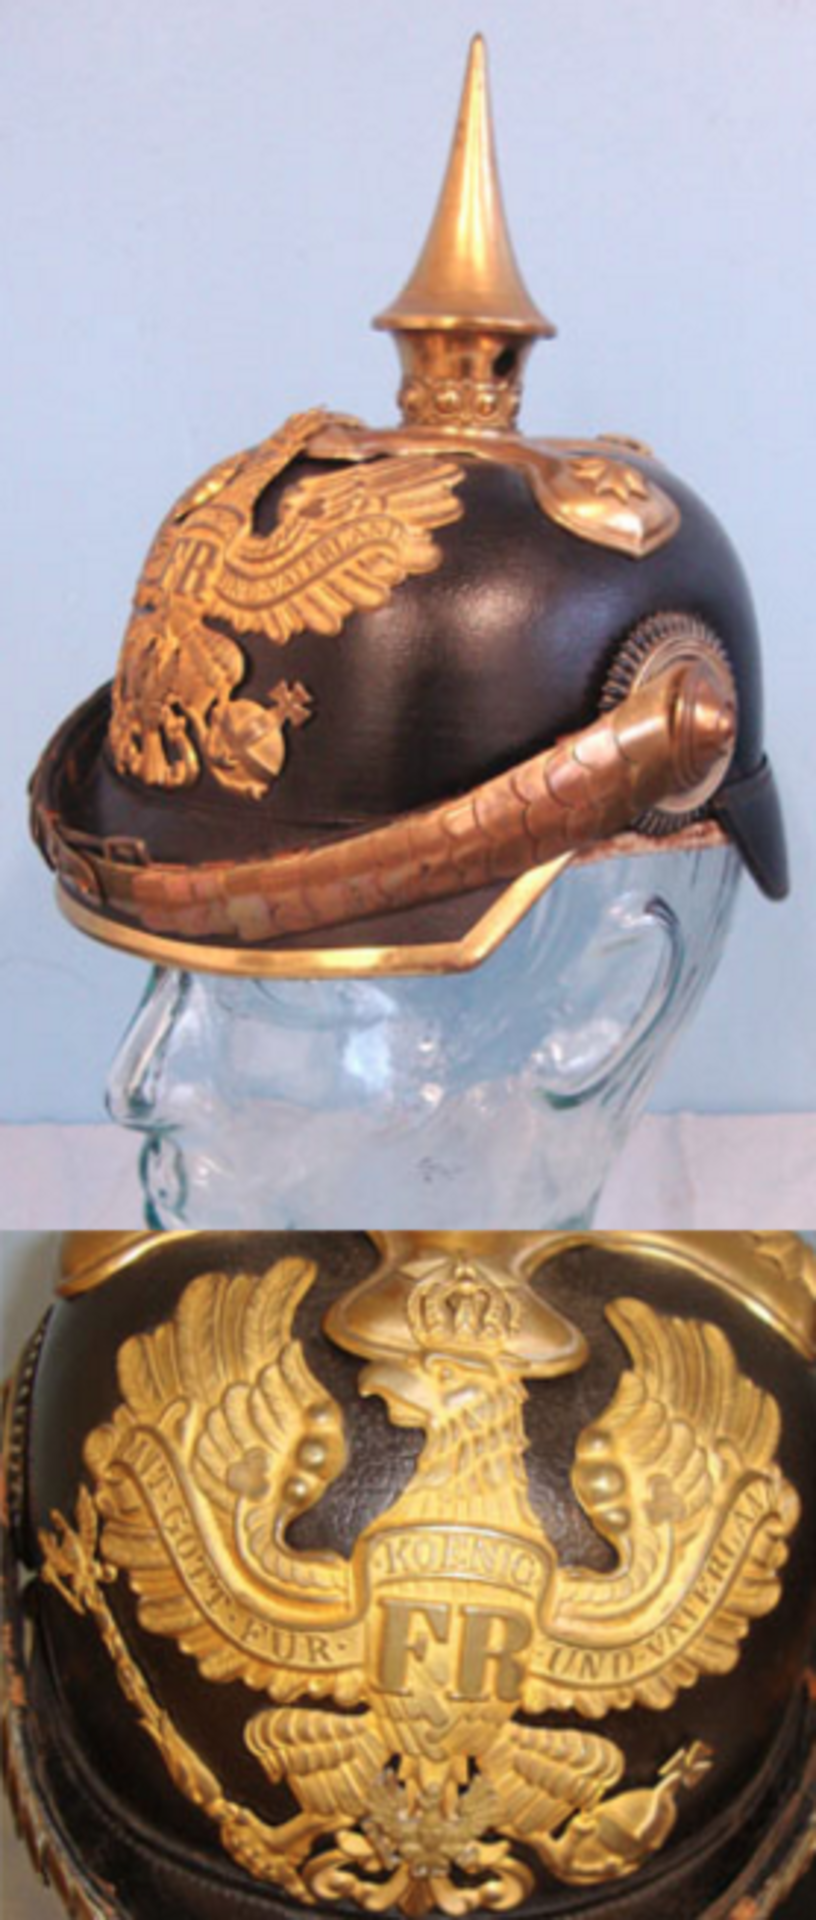 SUPERB, Original, WW1 Era, Prussian Officer's Pickelhaube Helmet With Imperial State Cockades - Bild 2 aus 3